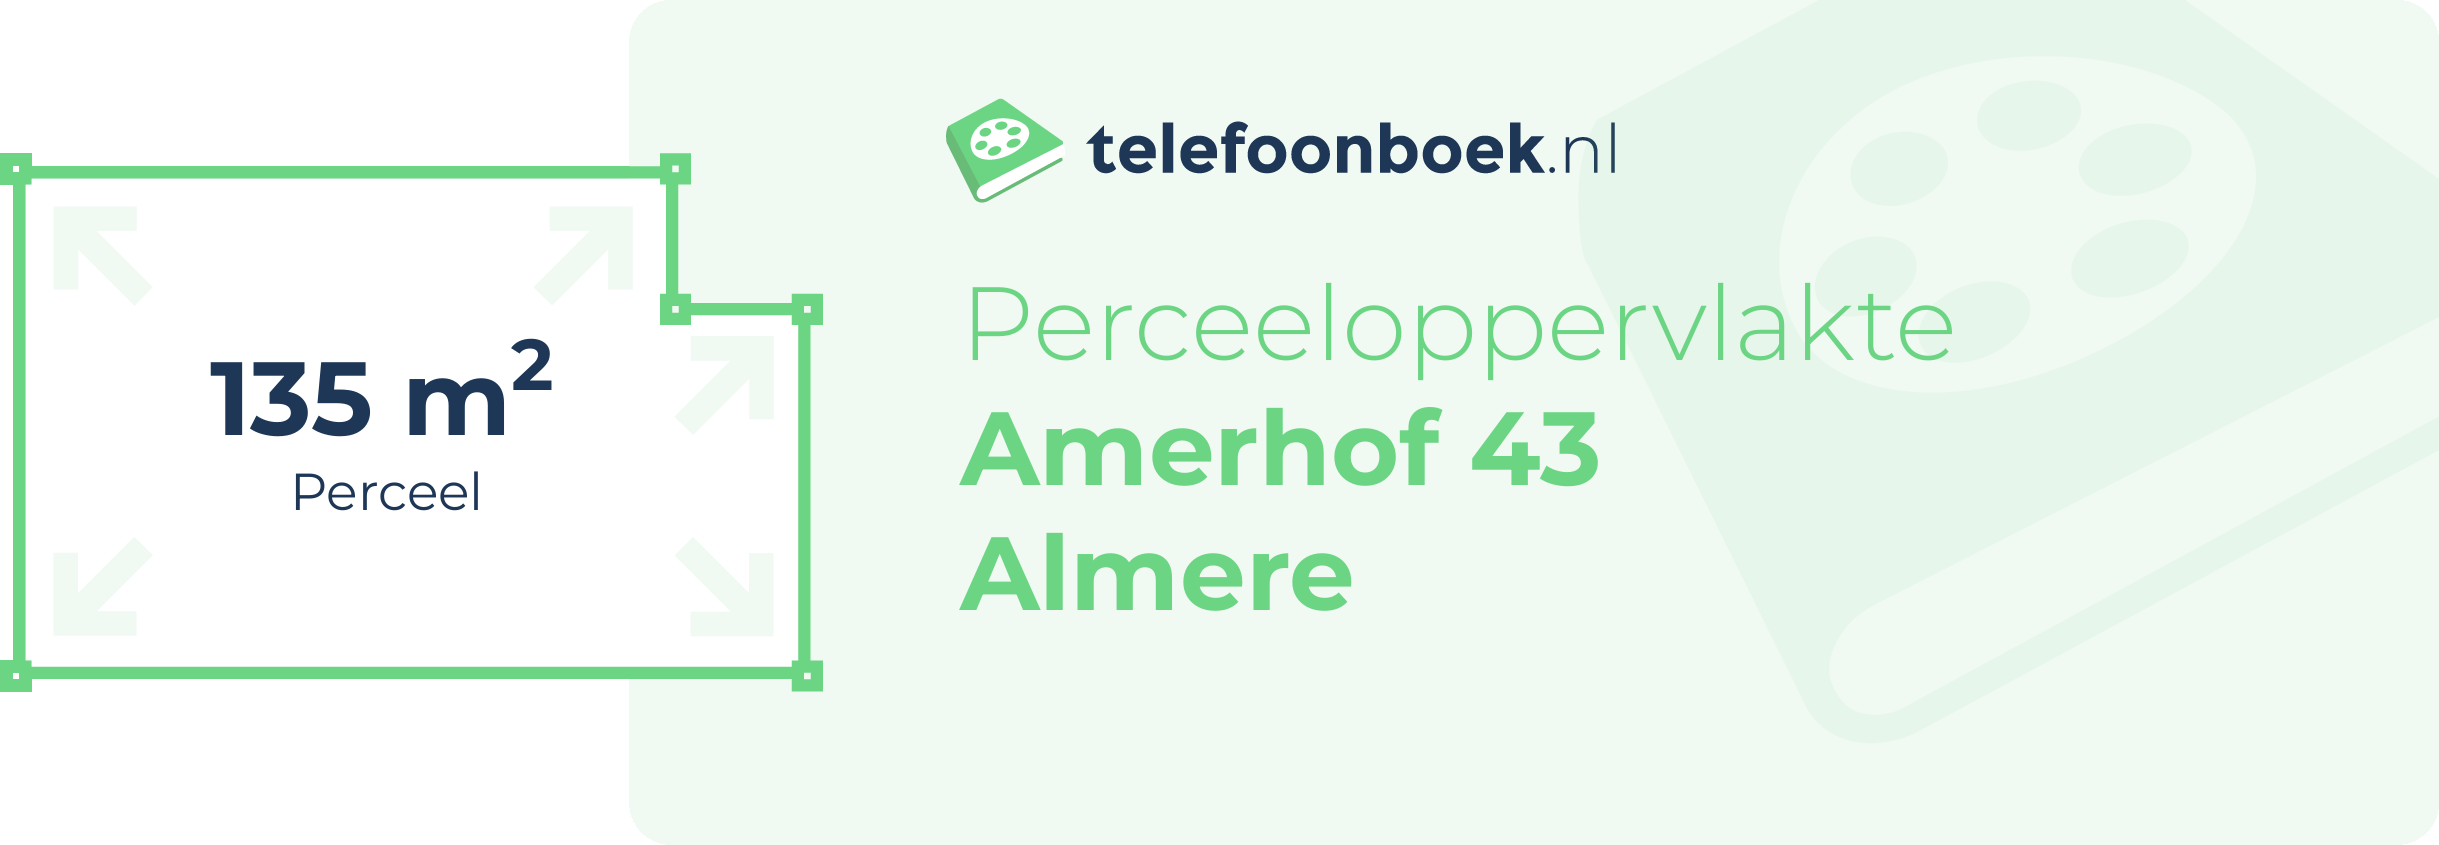 Perceeloppervlakte Amerhof 43 Almere